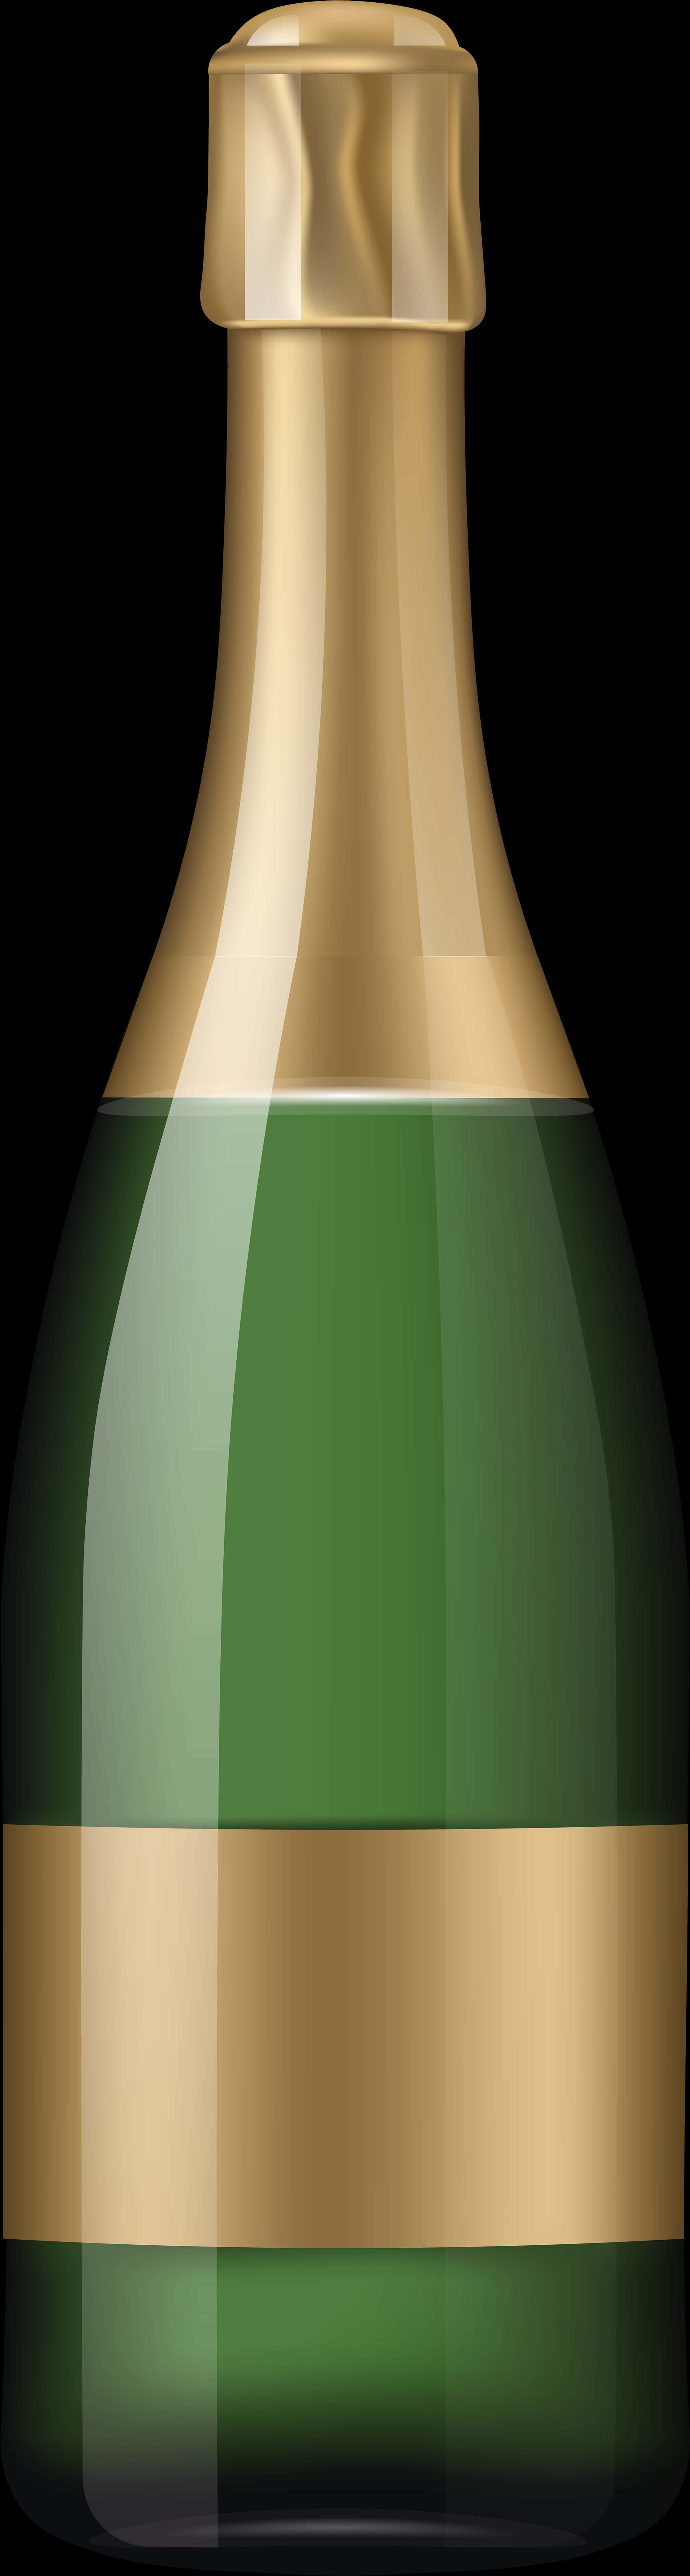 Champagne Bottle Vector Illustration PNG image